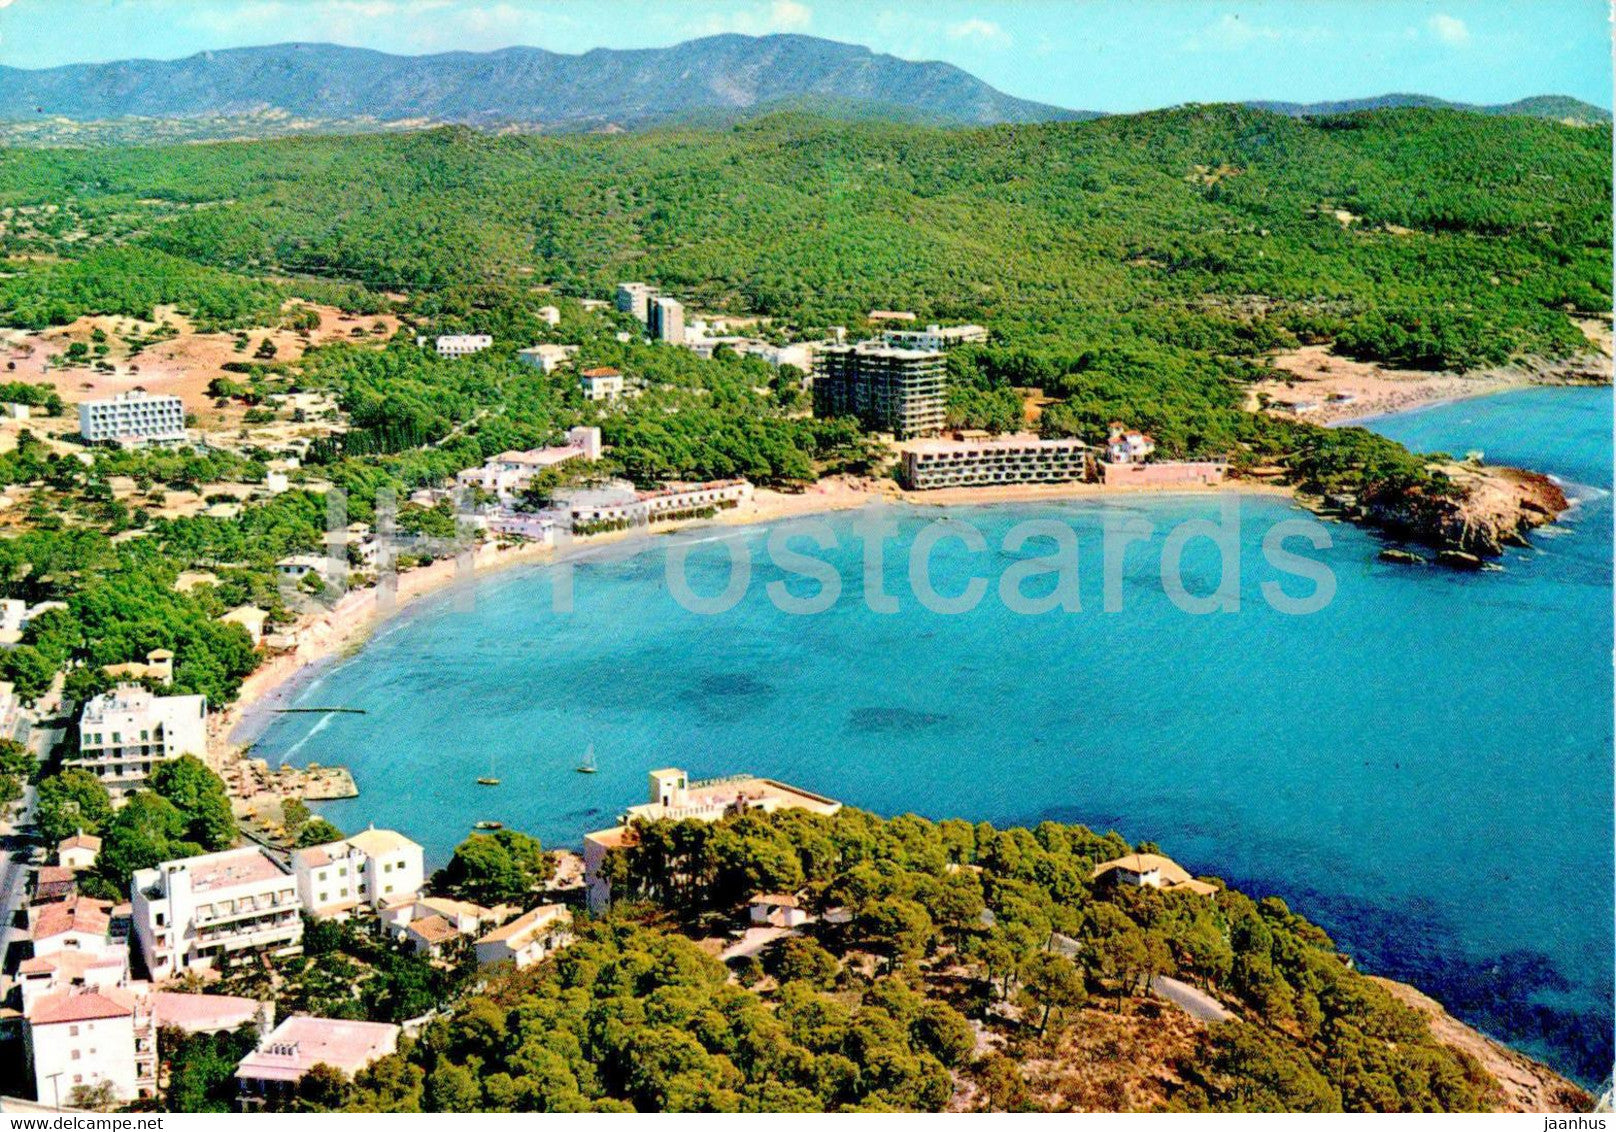 Paguera - Vista aerea de sus playas - Mallorca - 133 - Spain - used - JH Postcards